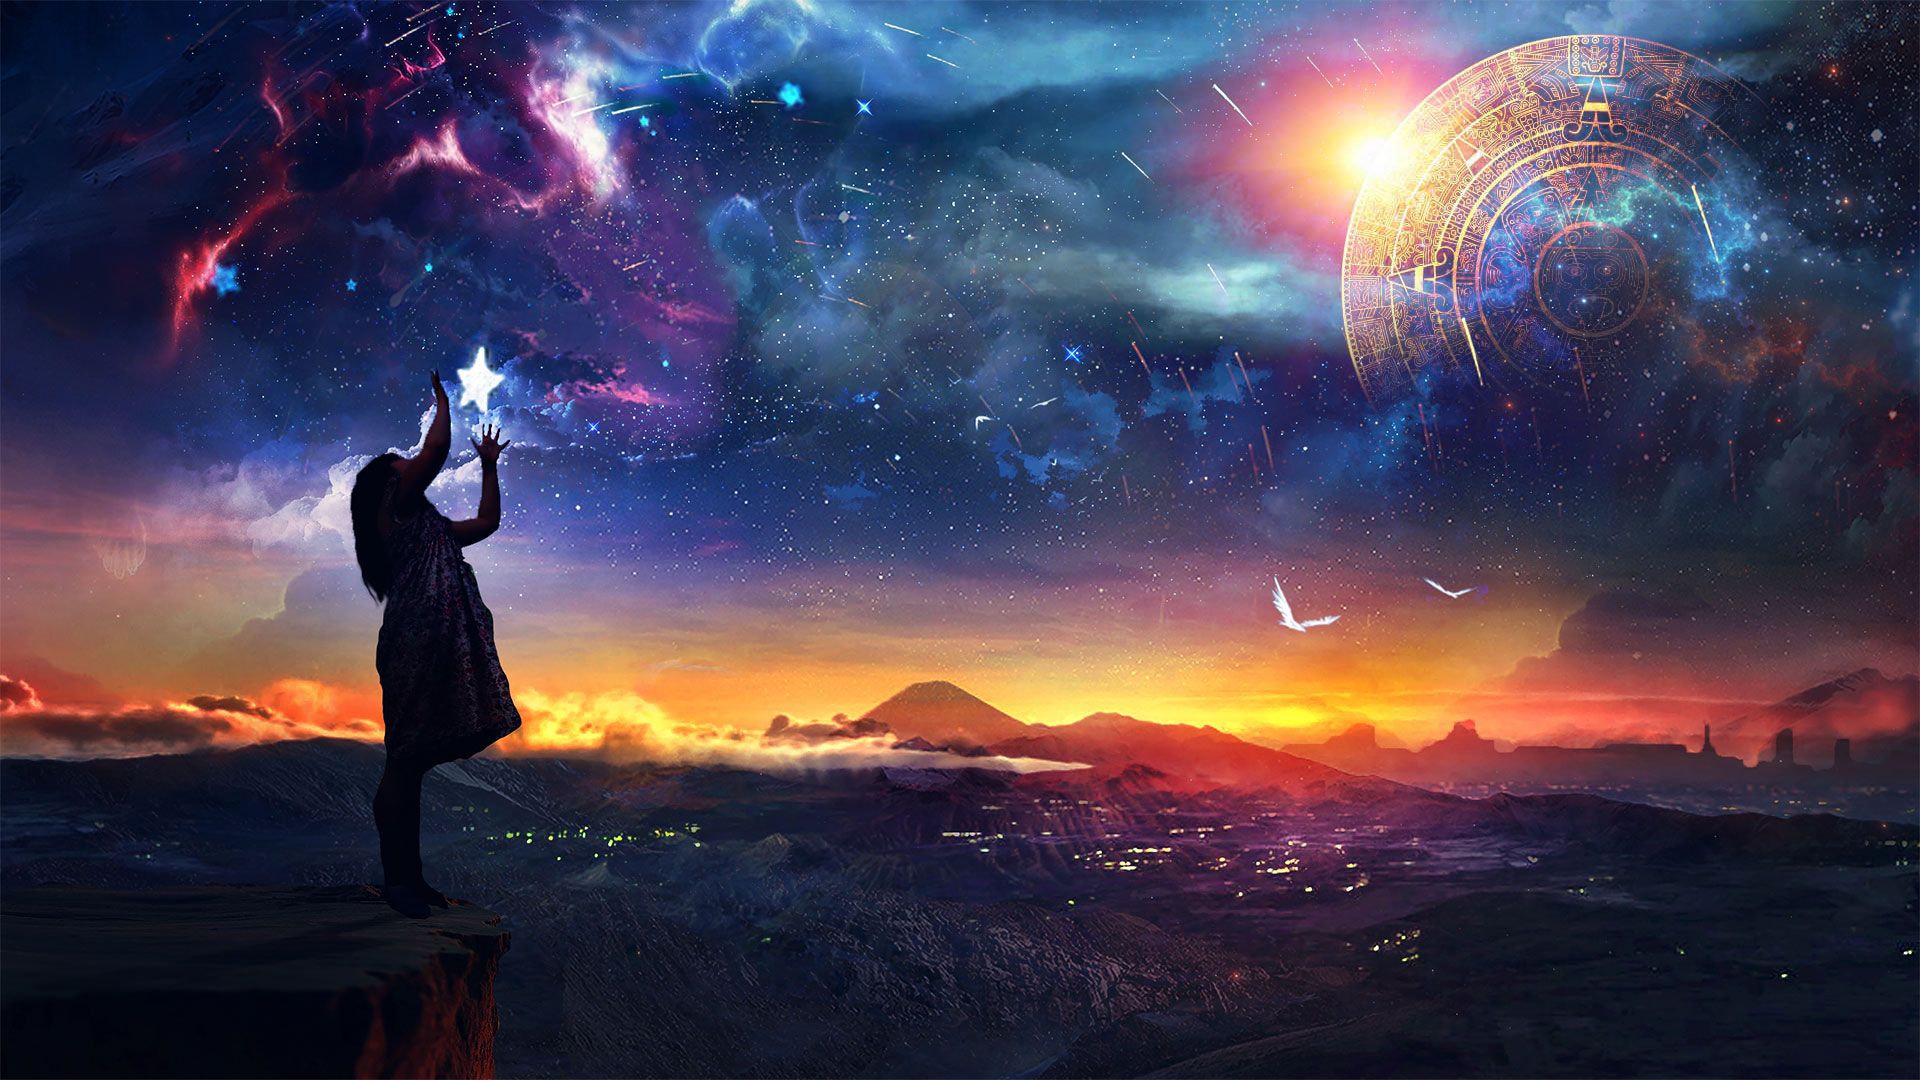 Promotional image for Можно ли увлекаться астрологией?